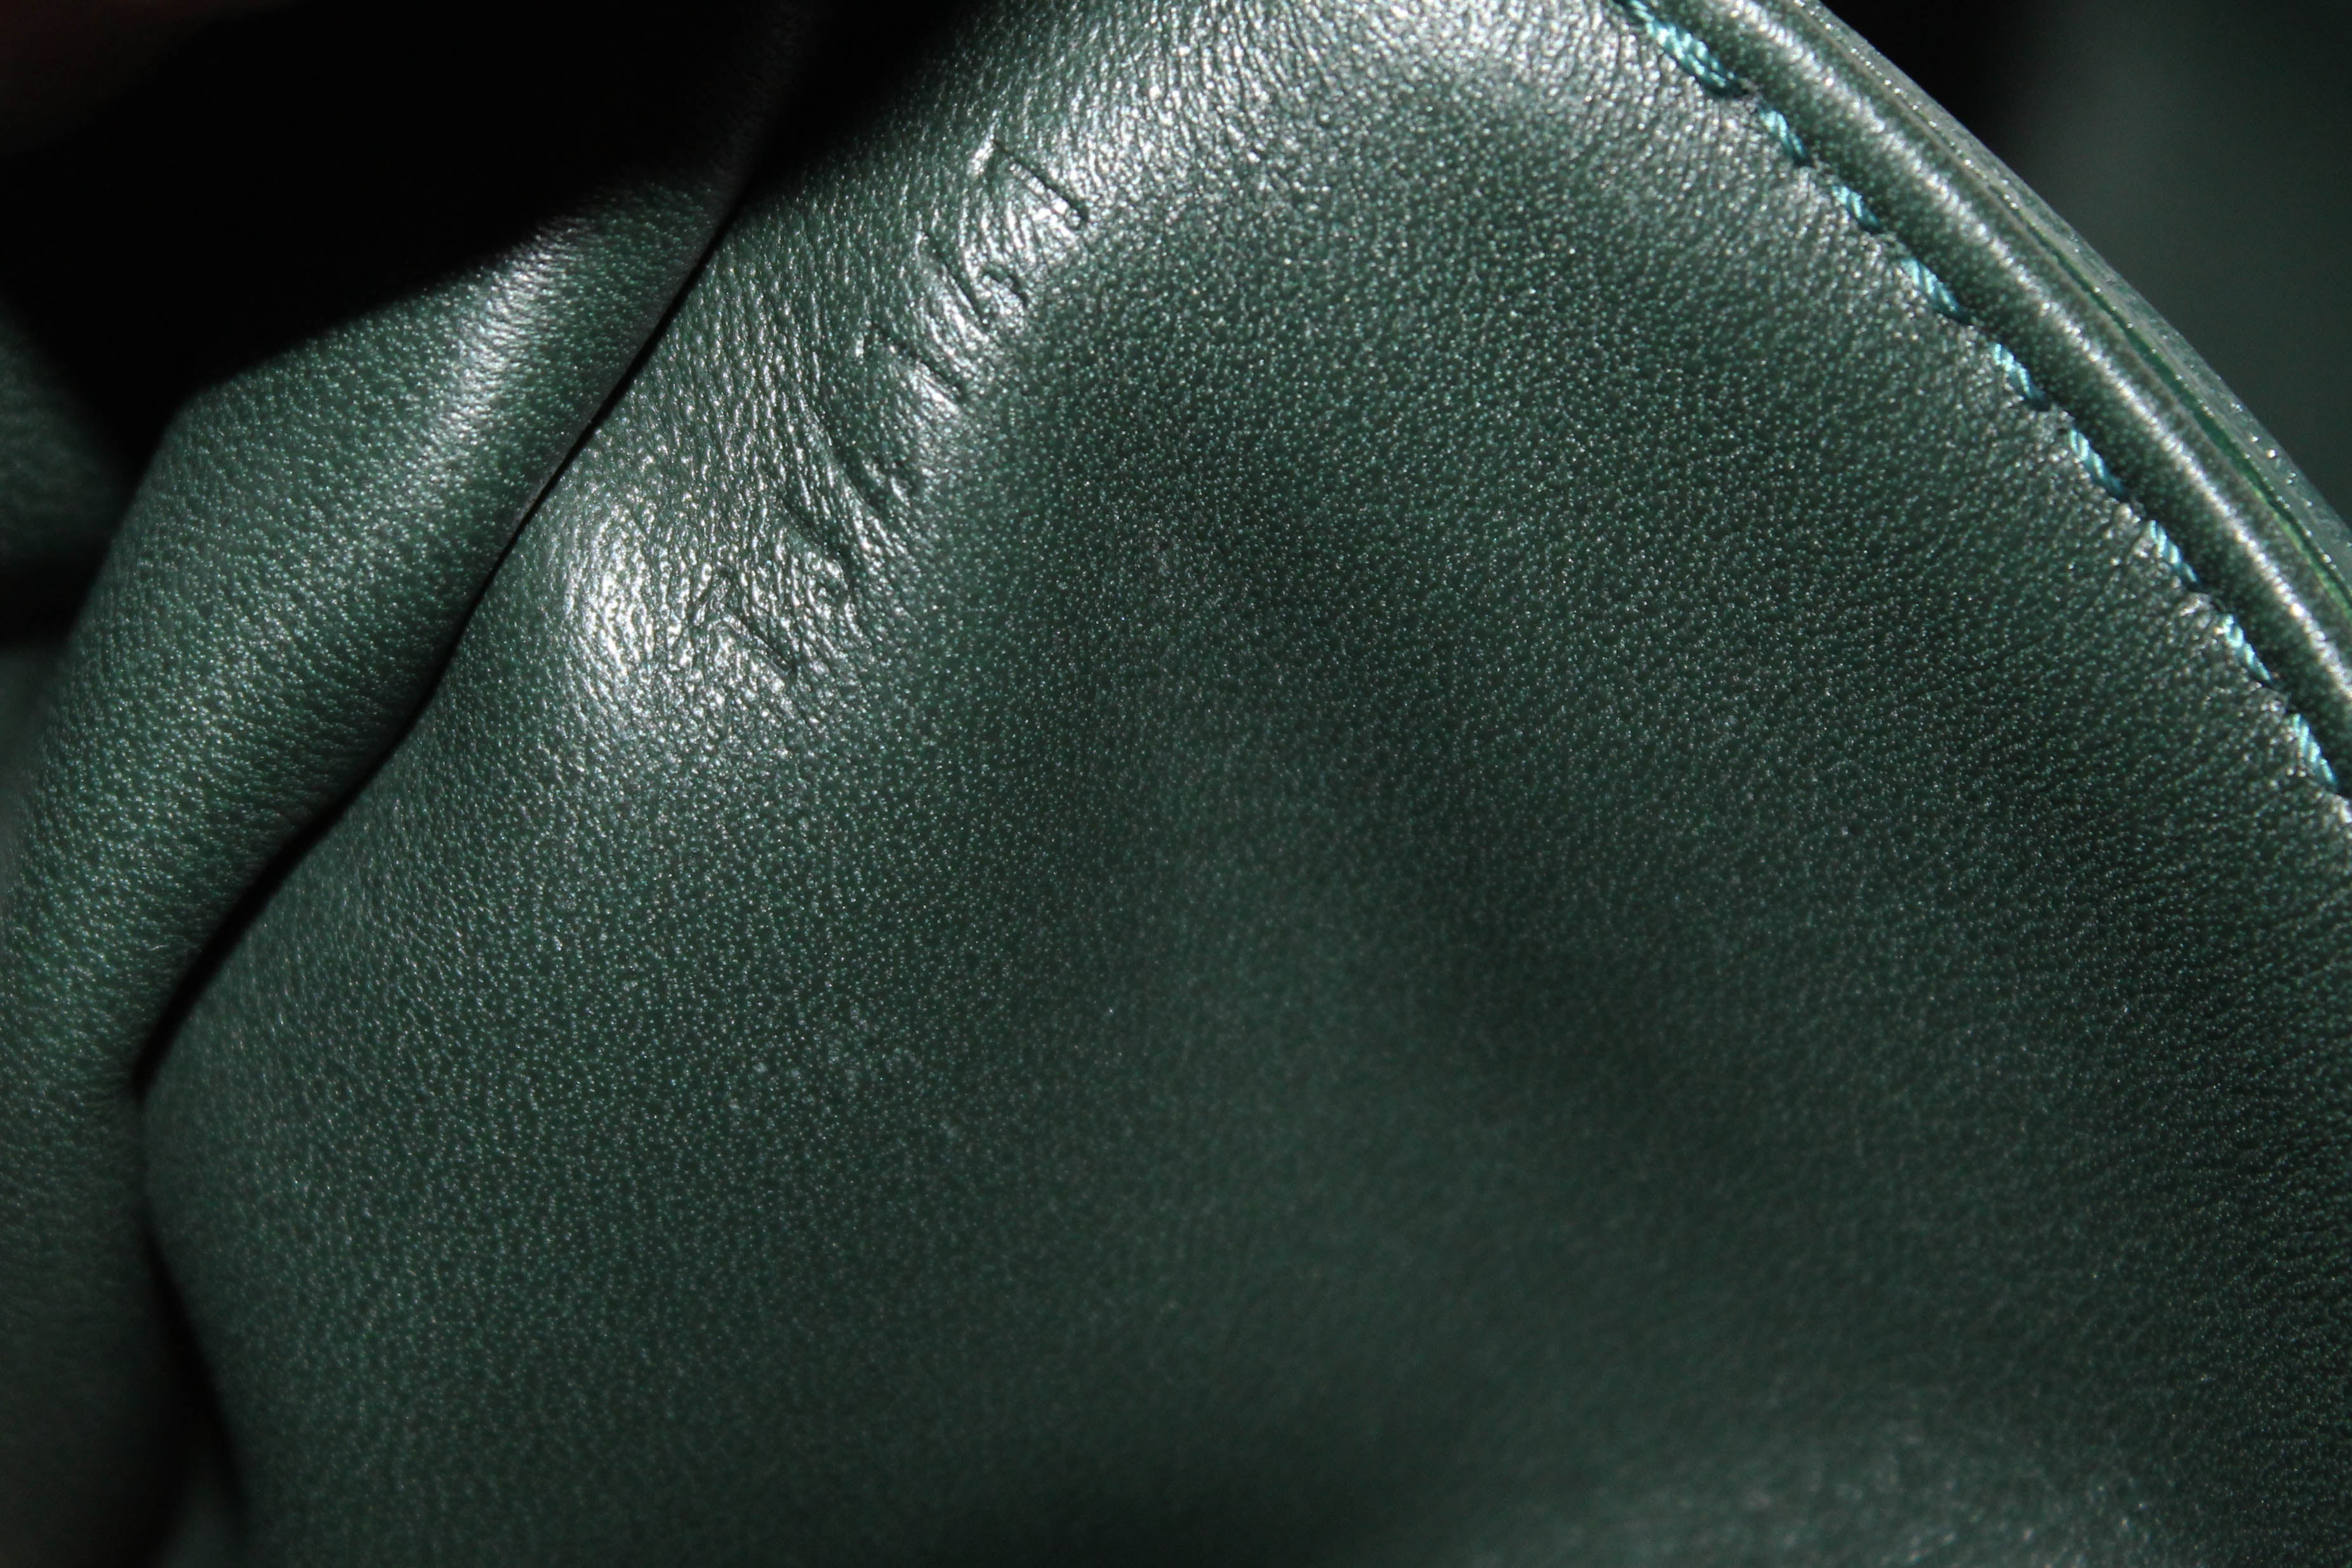 Louis Vuitton, Bags, Authentic Louis Vuitton Limited Edition Gris  Monogram Fascination Baglike New